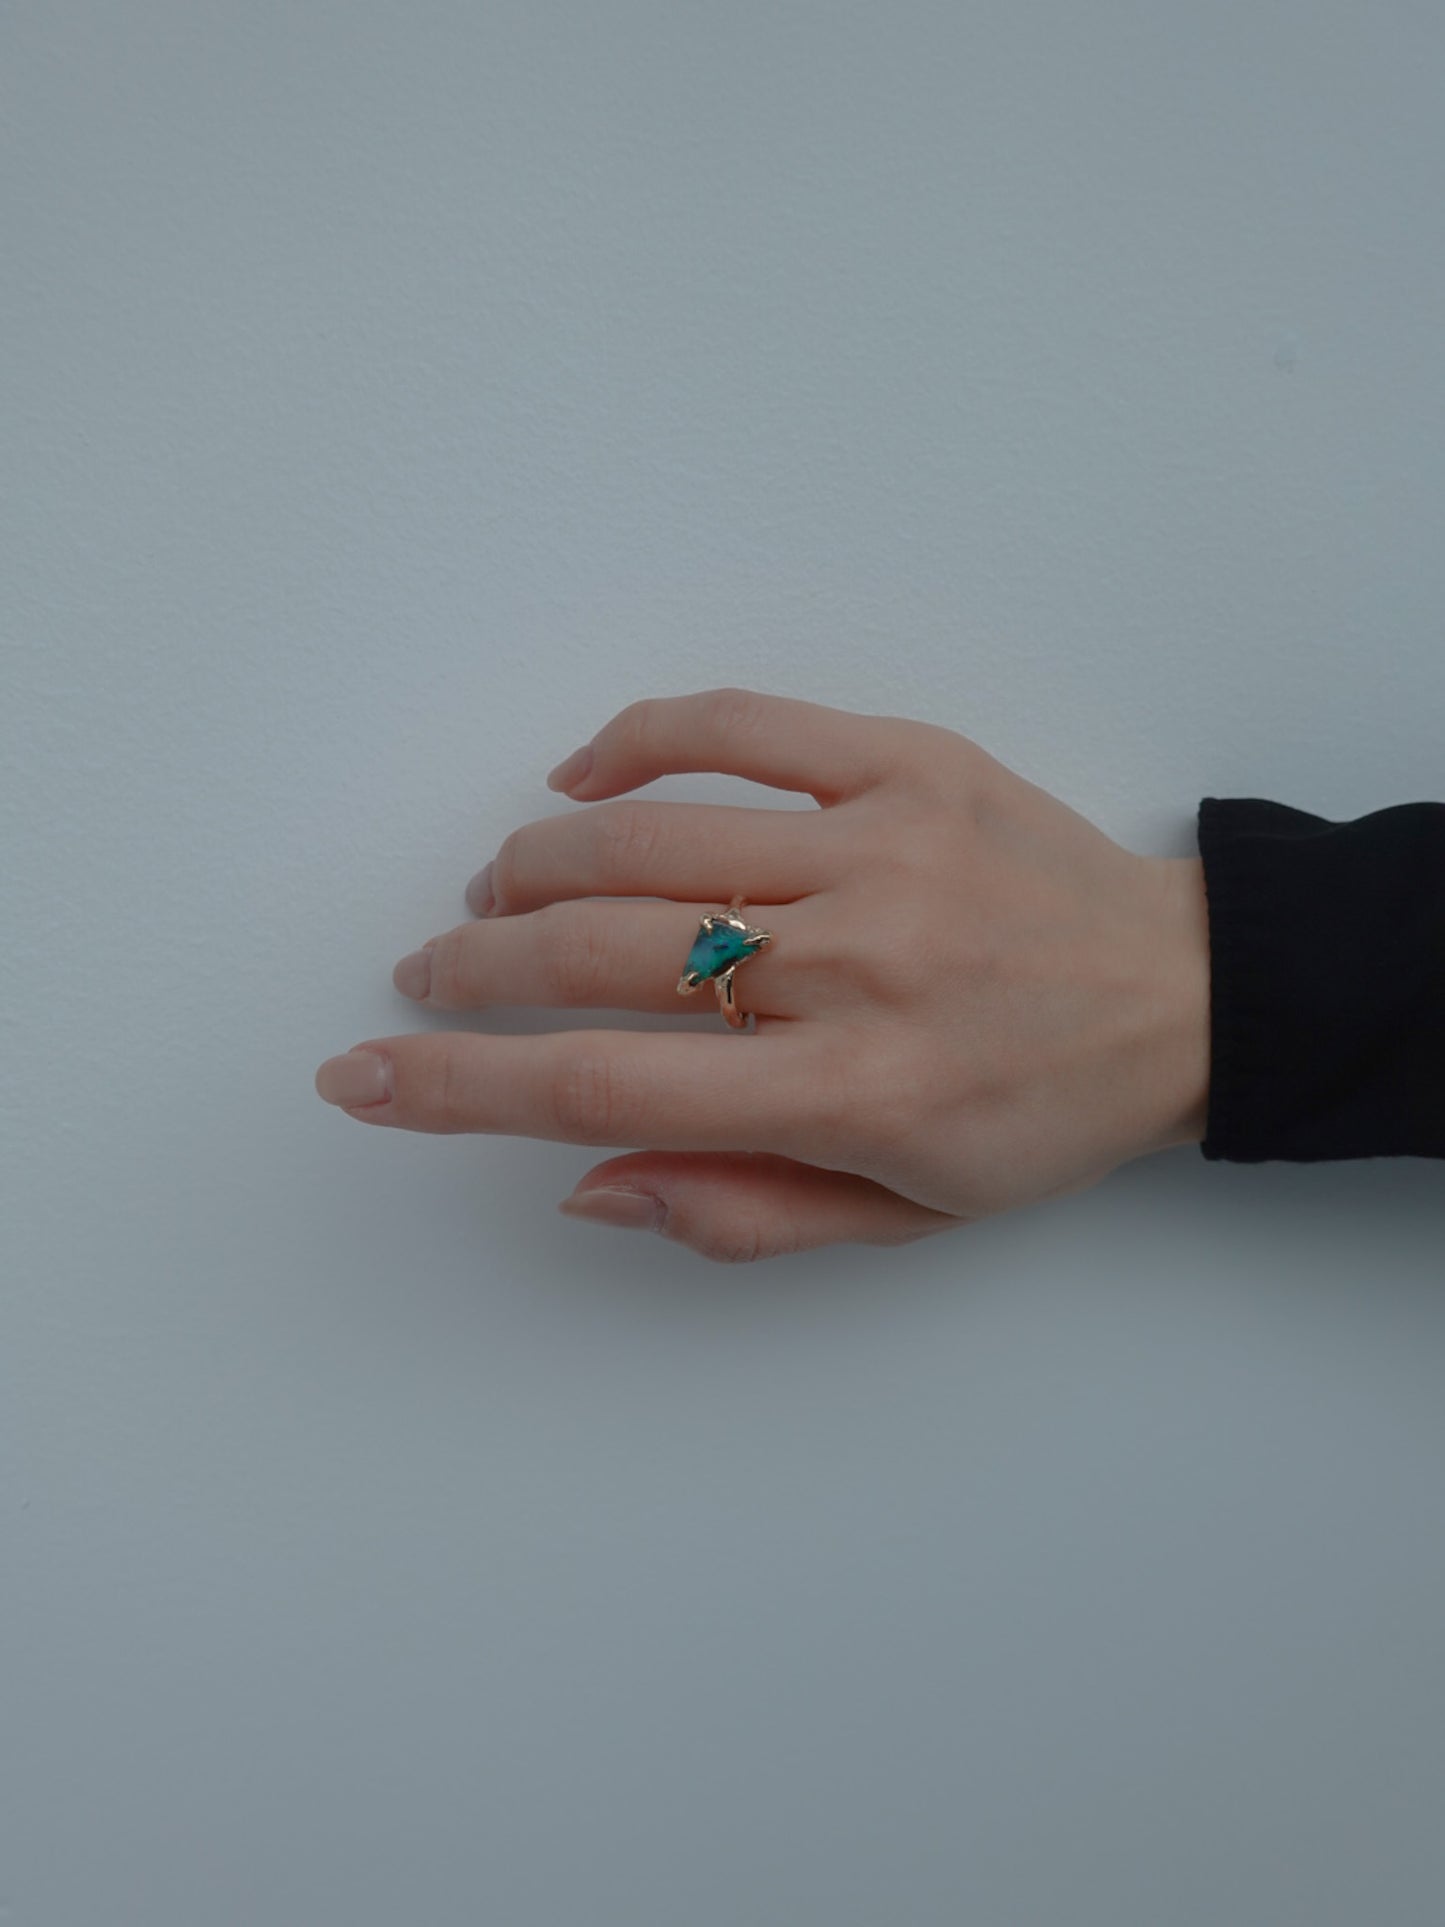 [一点物] boulder opal ring